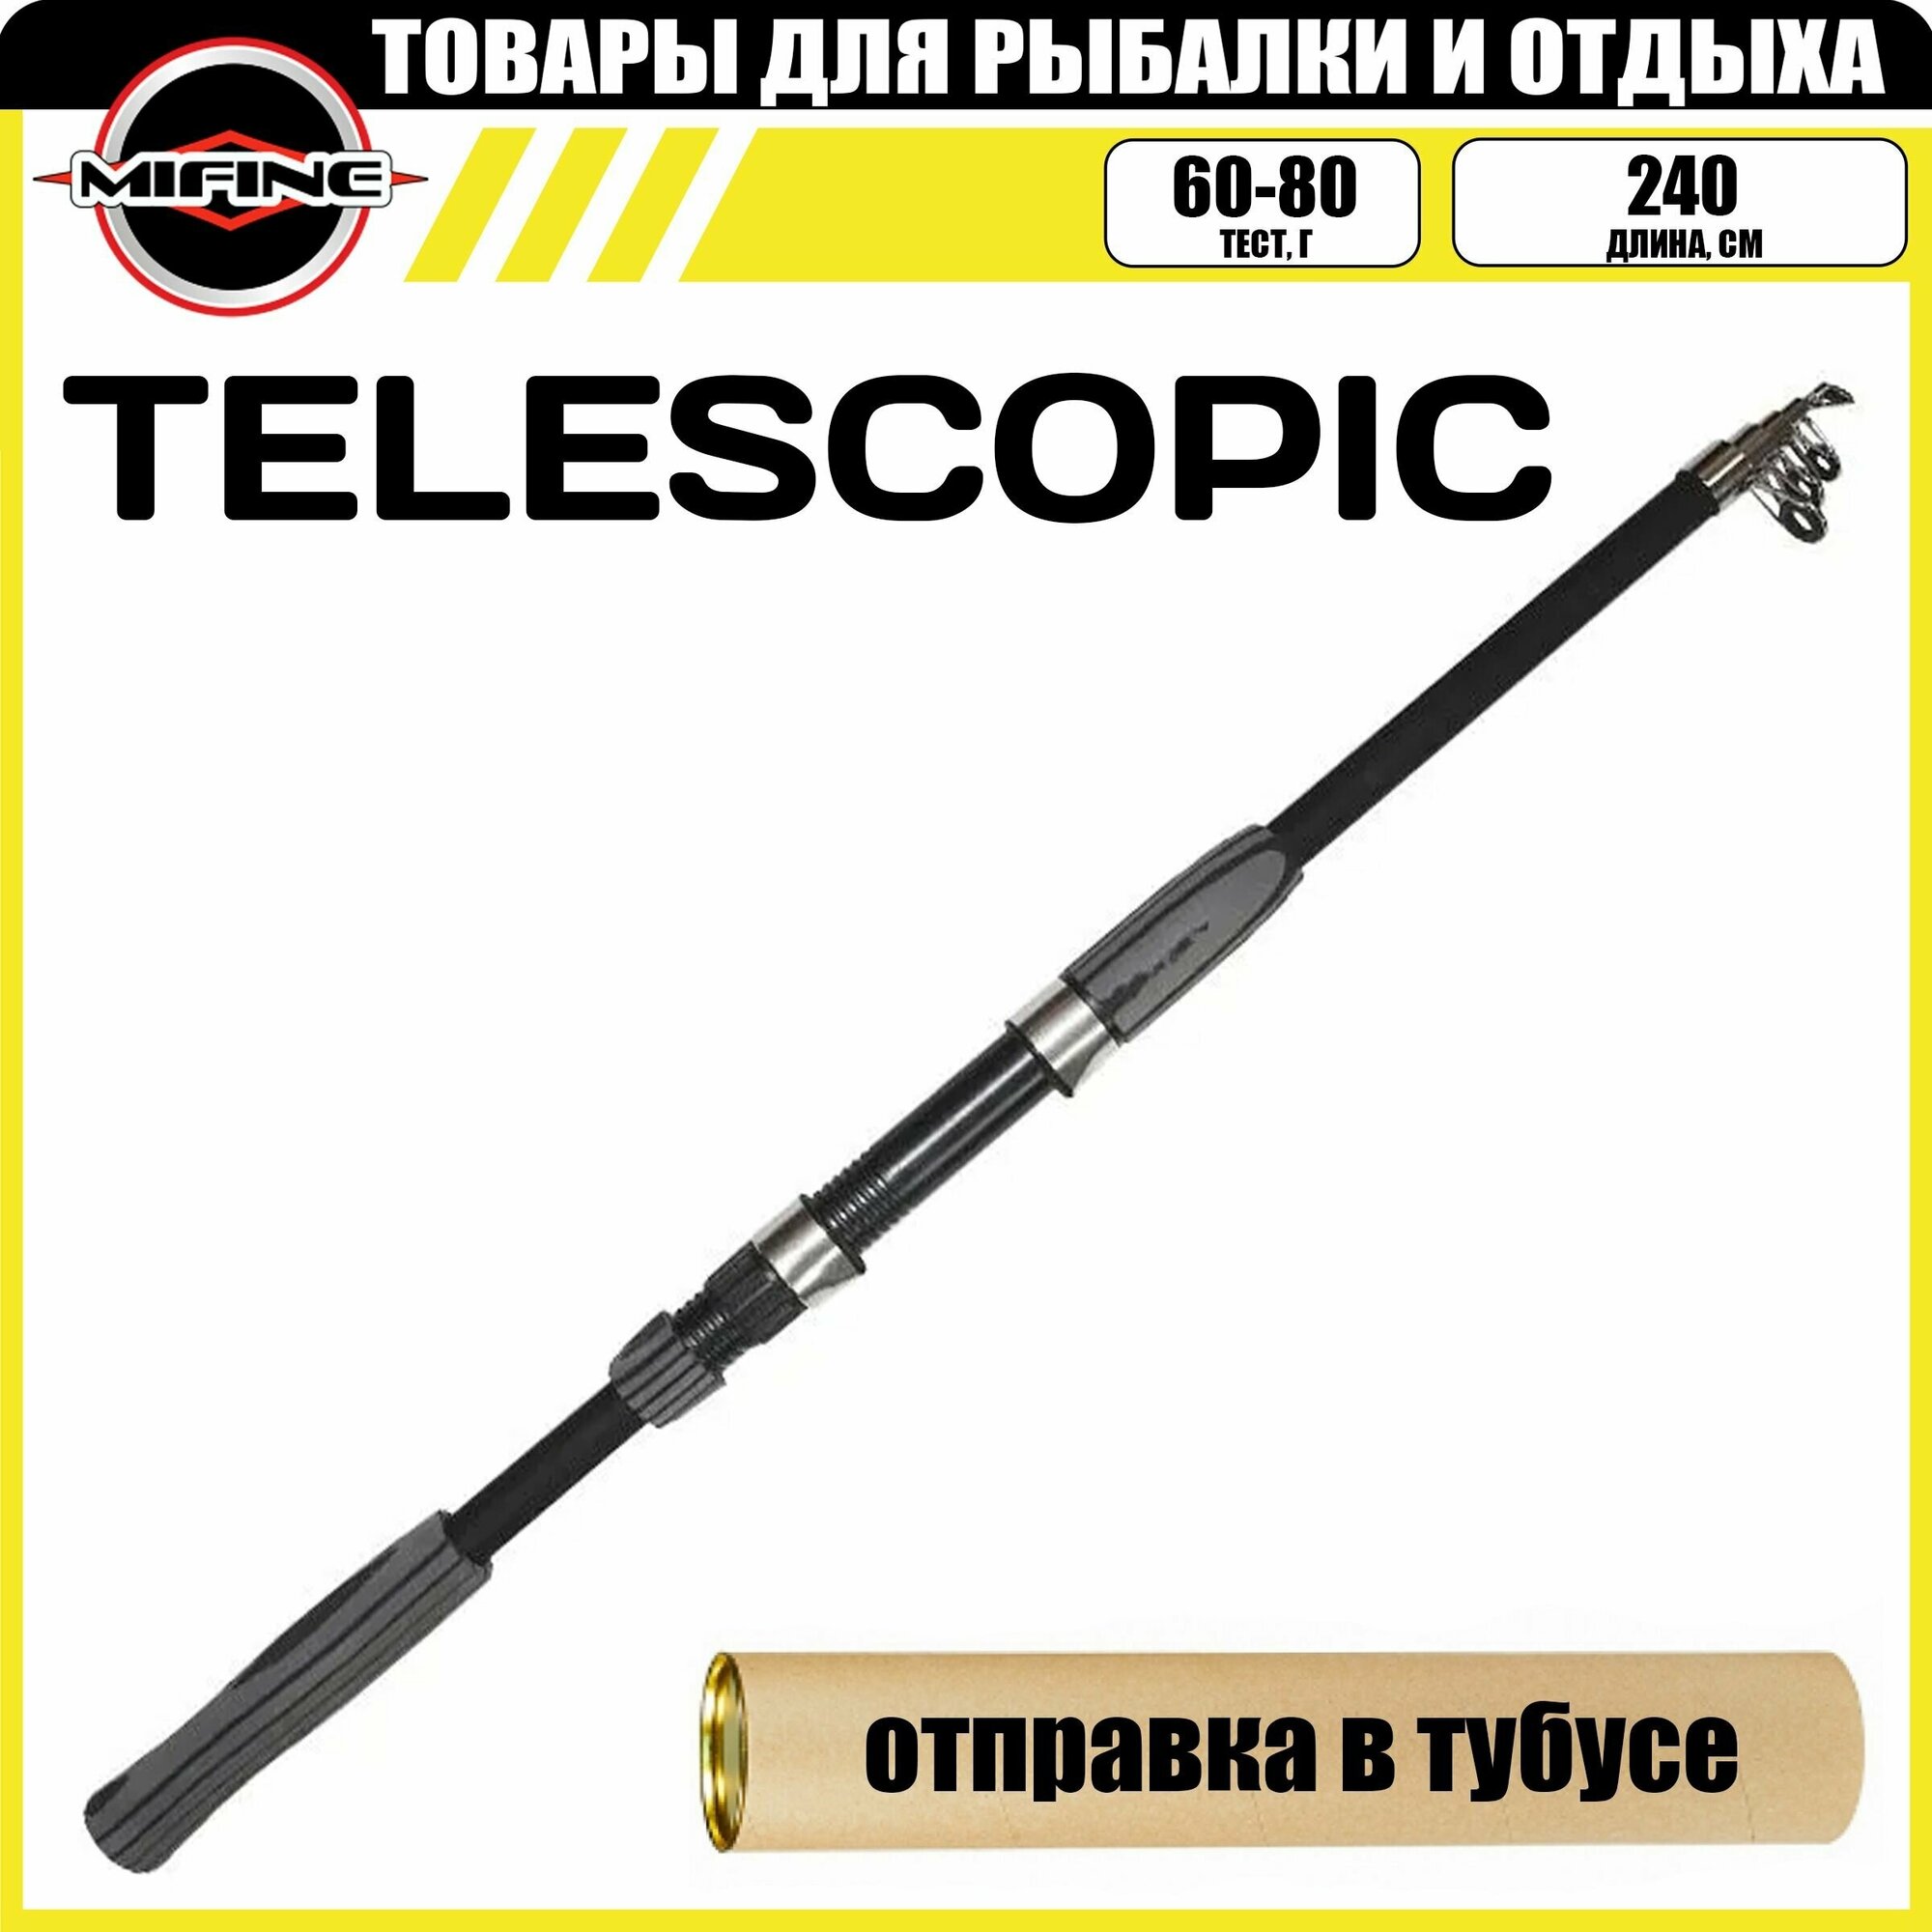 Спиннинг телескопический MIFINE TELESCOPIC 2.4м (60-80гр), рыболовный, удилище для рыбалки